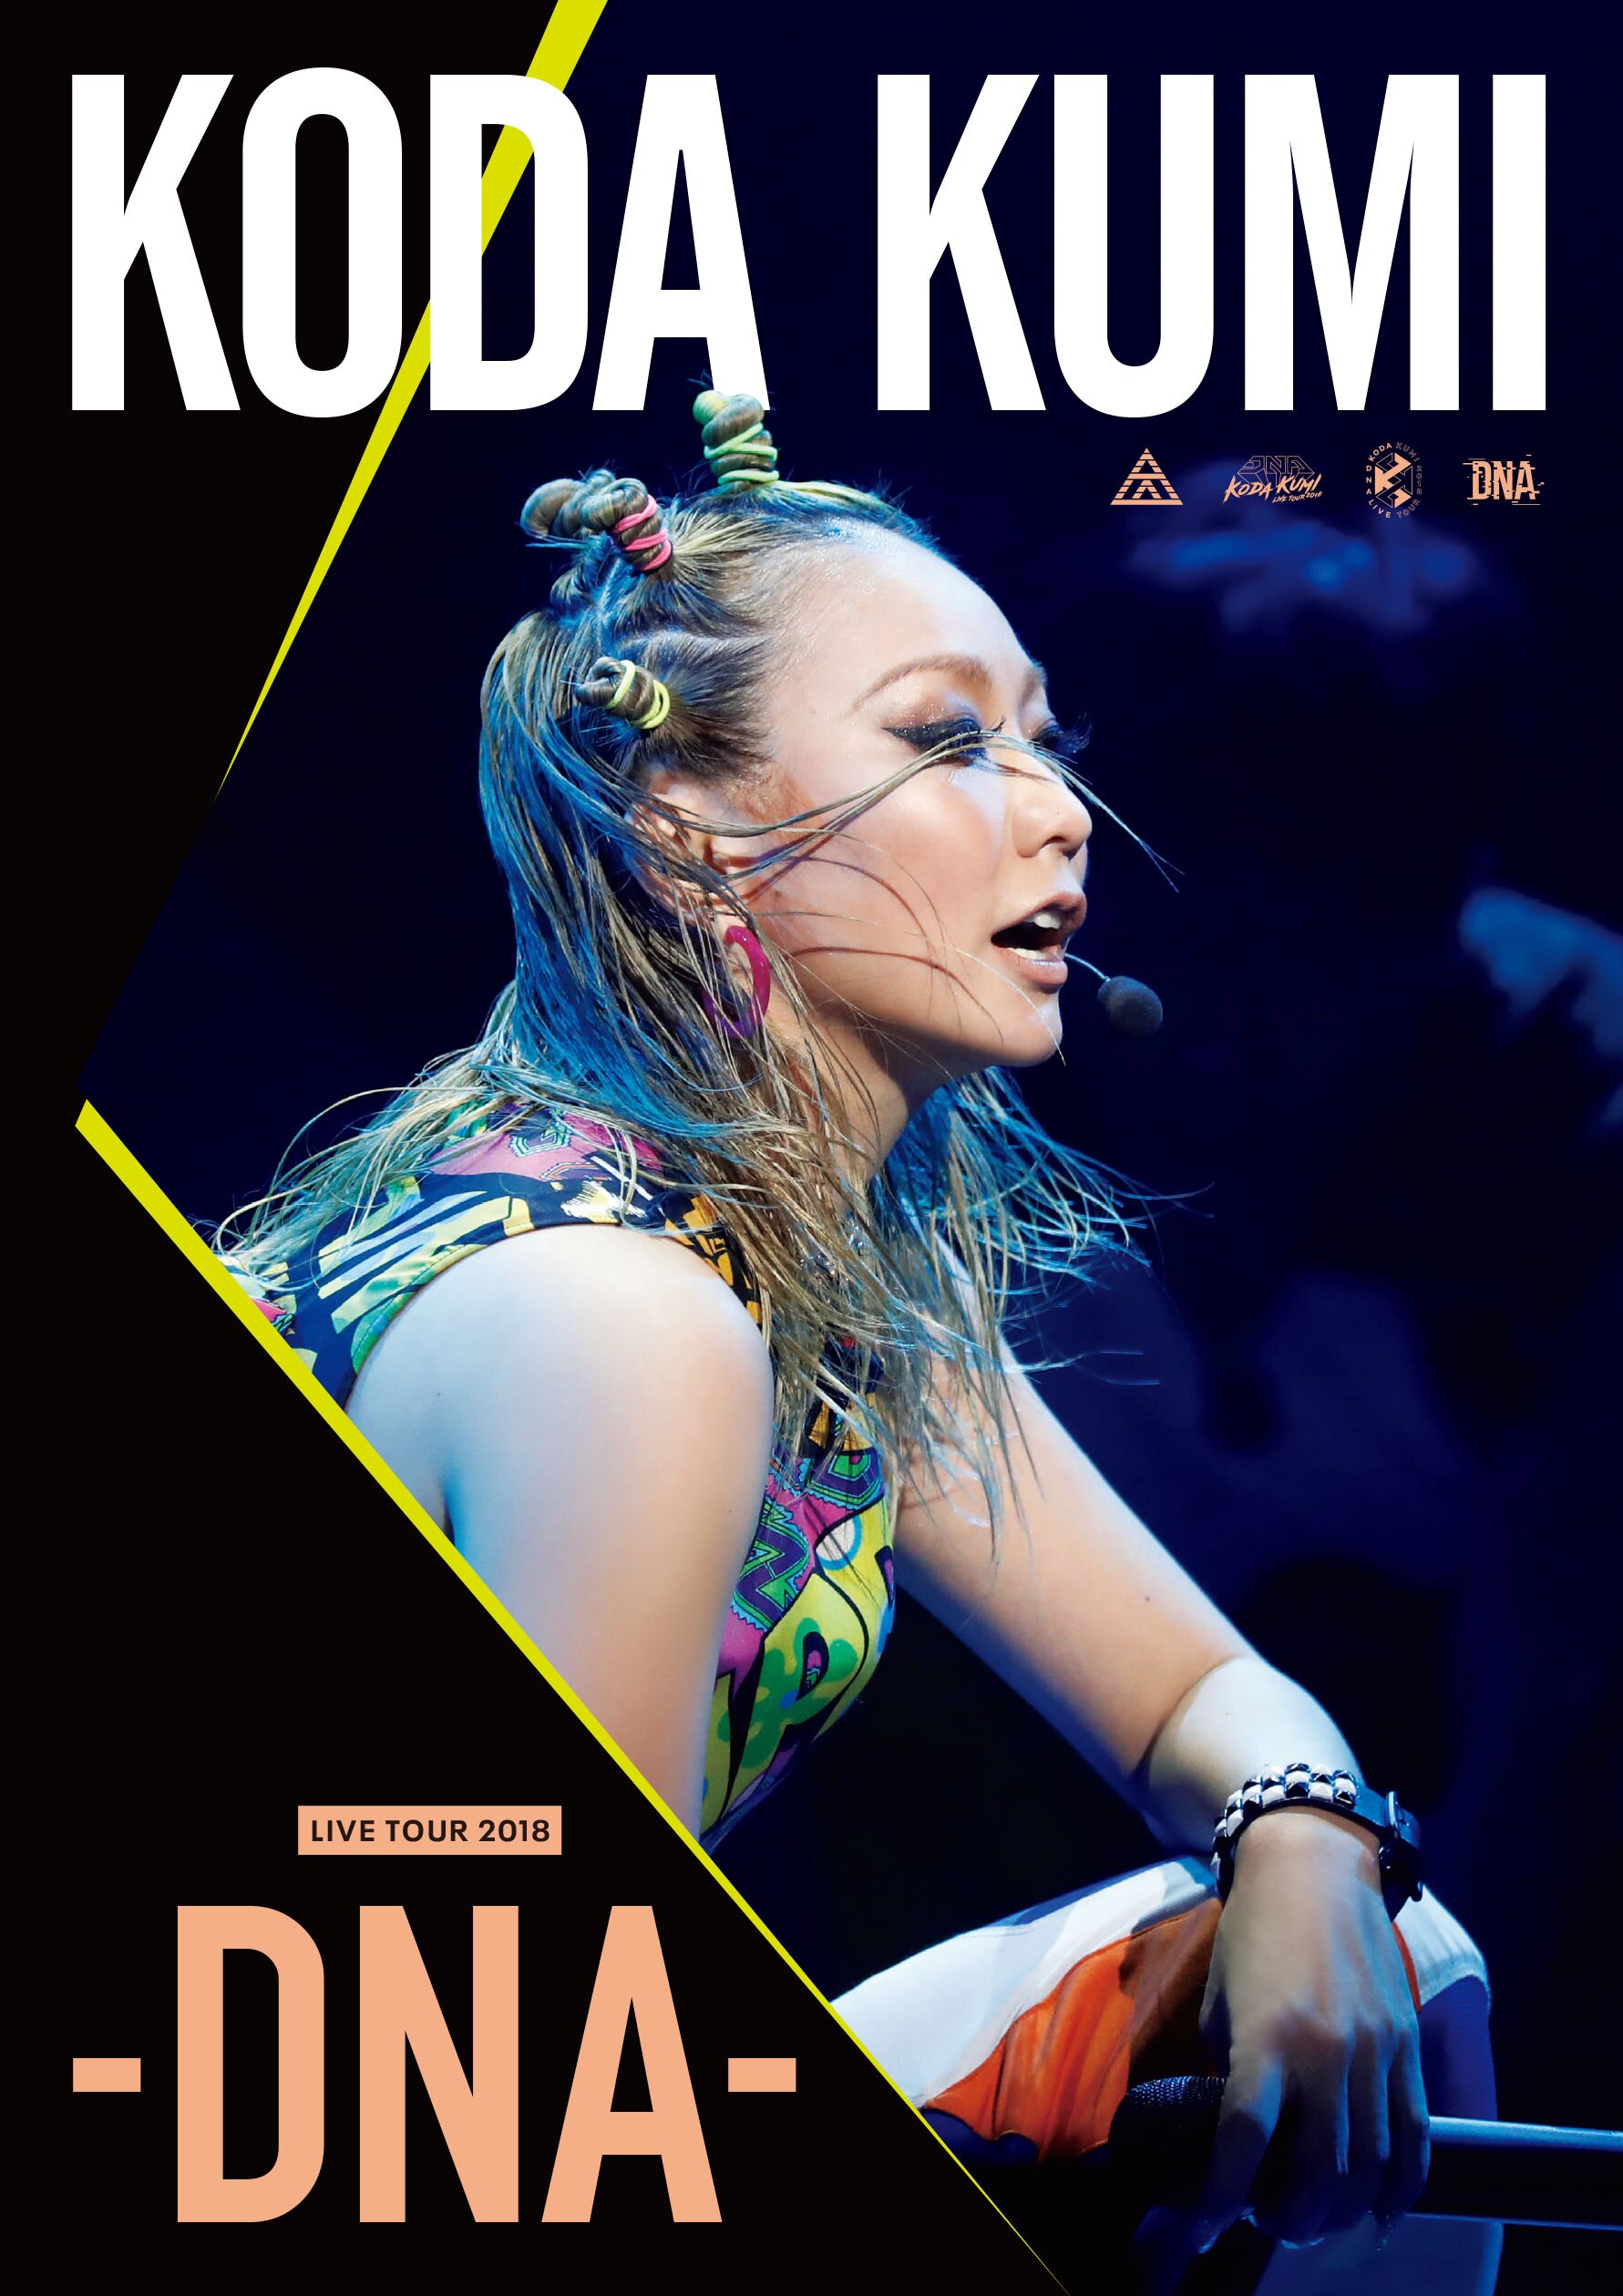 ライヴDVD&Blu-ray『KODA KUMI LIVE TOUR 2018 - DNA -』全国CD 